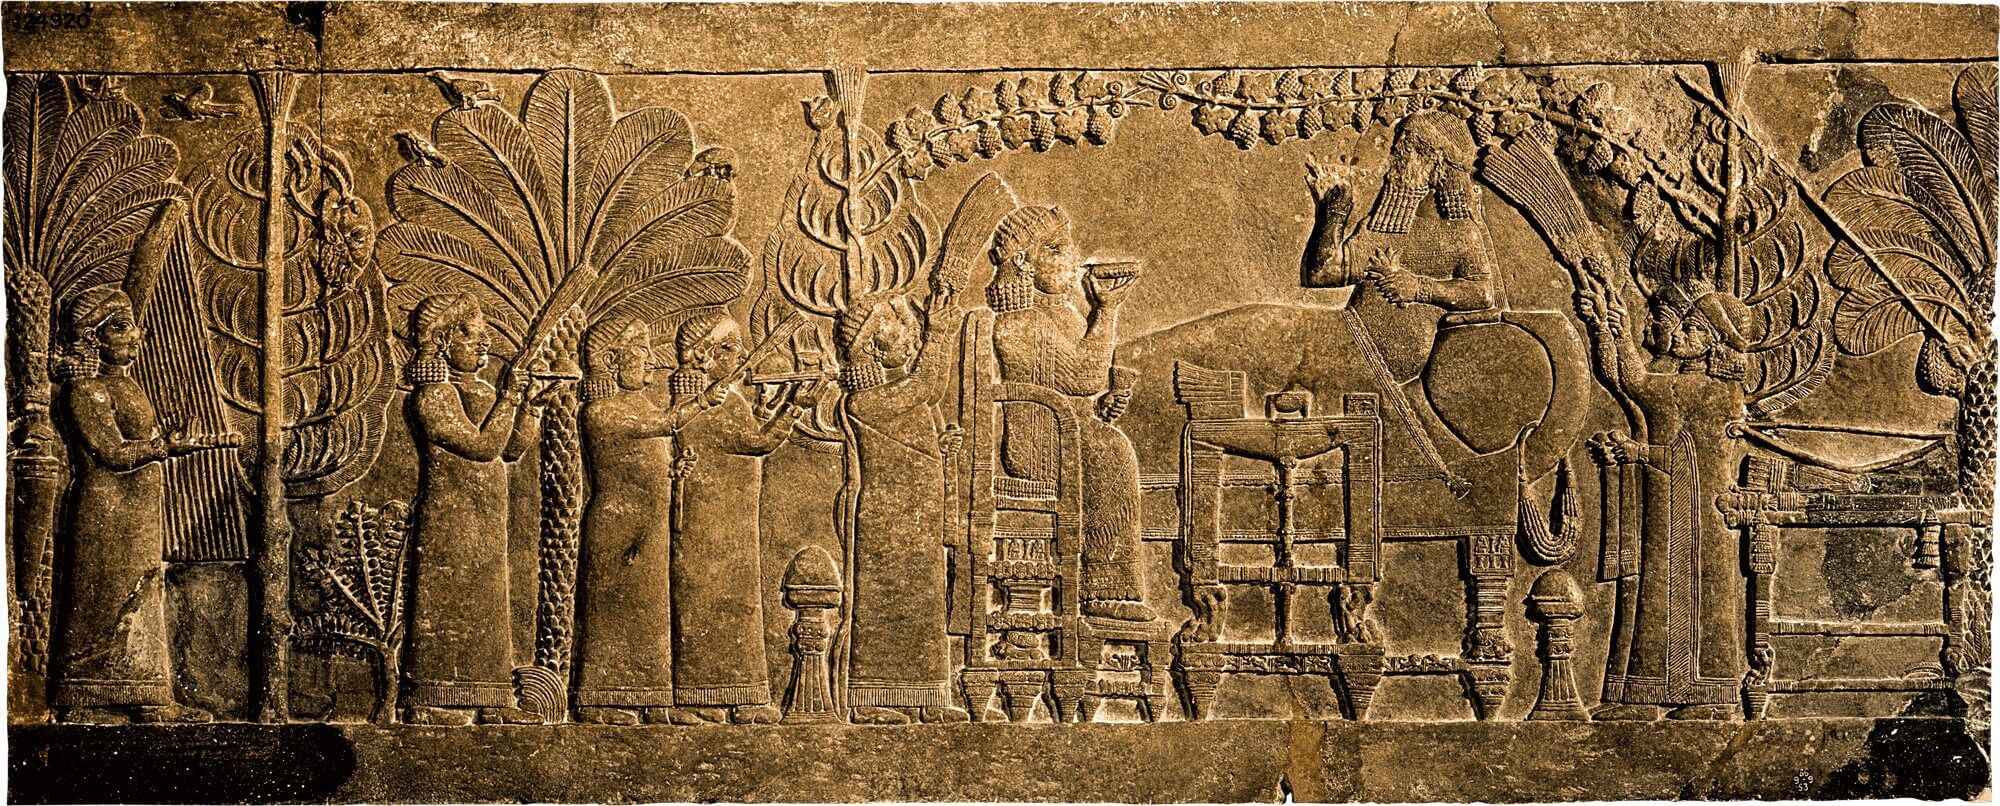 relieve asirio, le cual muestra el episodio en el que Assurbanipal y su esposa celebran la victoria contra Elam